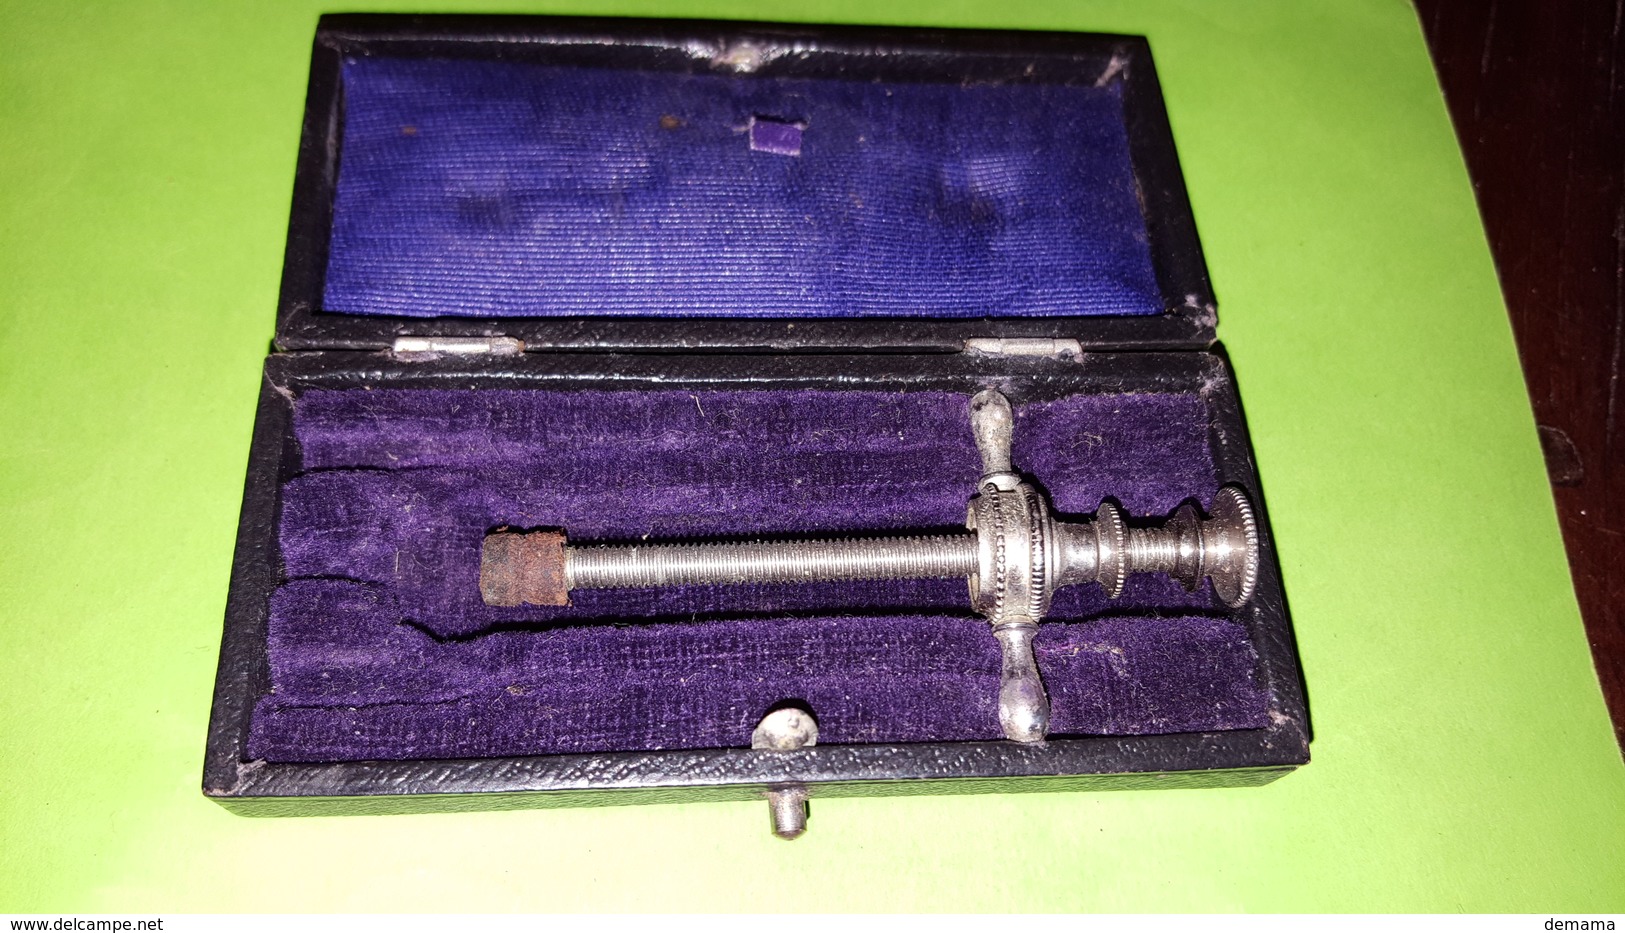 Antieke injectiespuit/seringe/ spritze met twee naalden in origineel doosje. Plus tweede doosje met onderdeel.